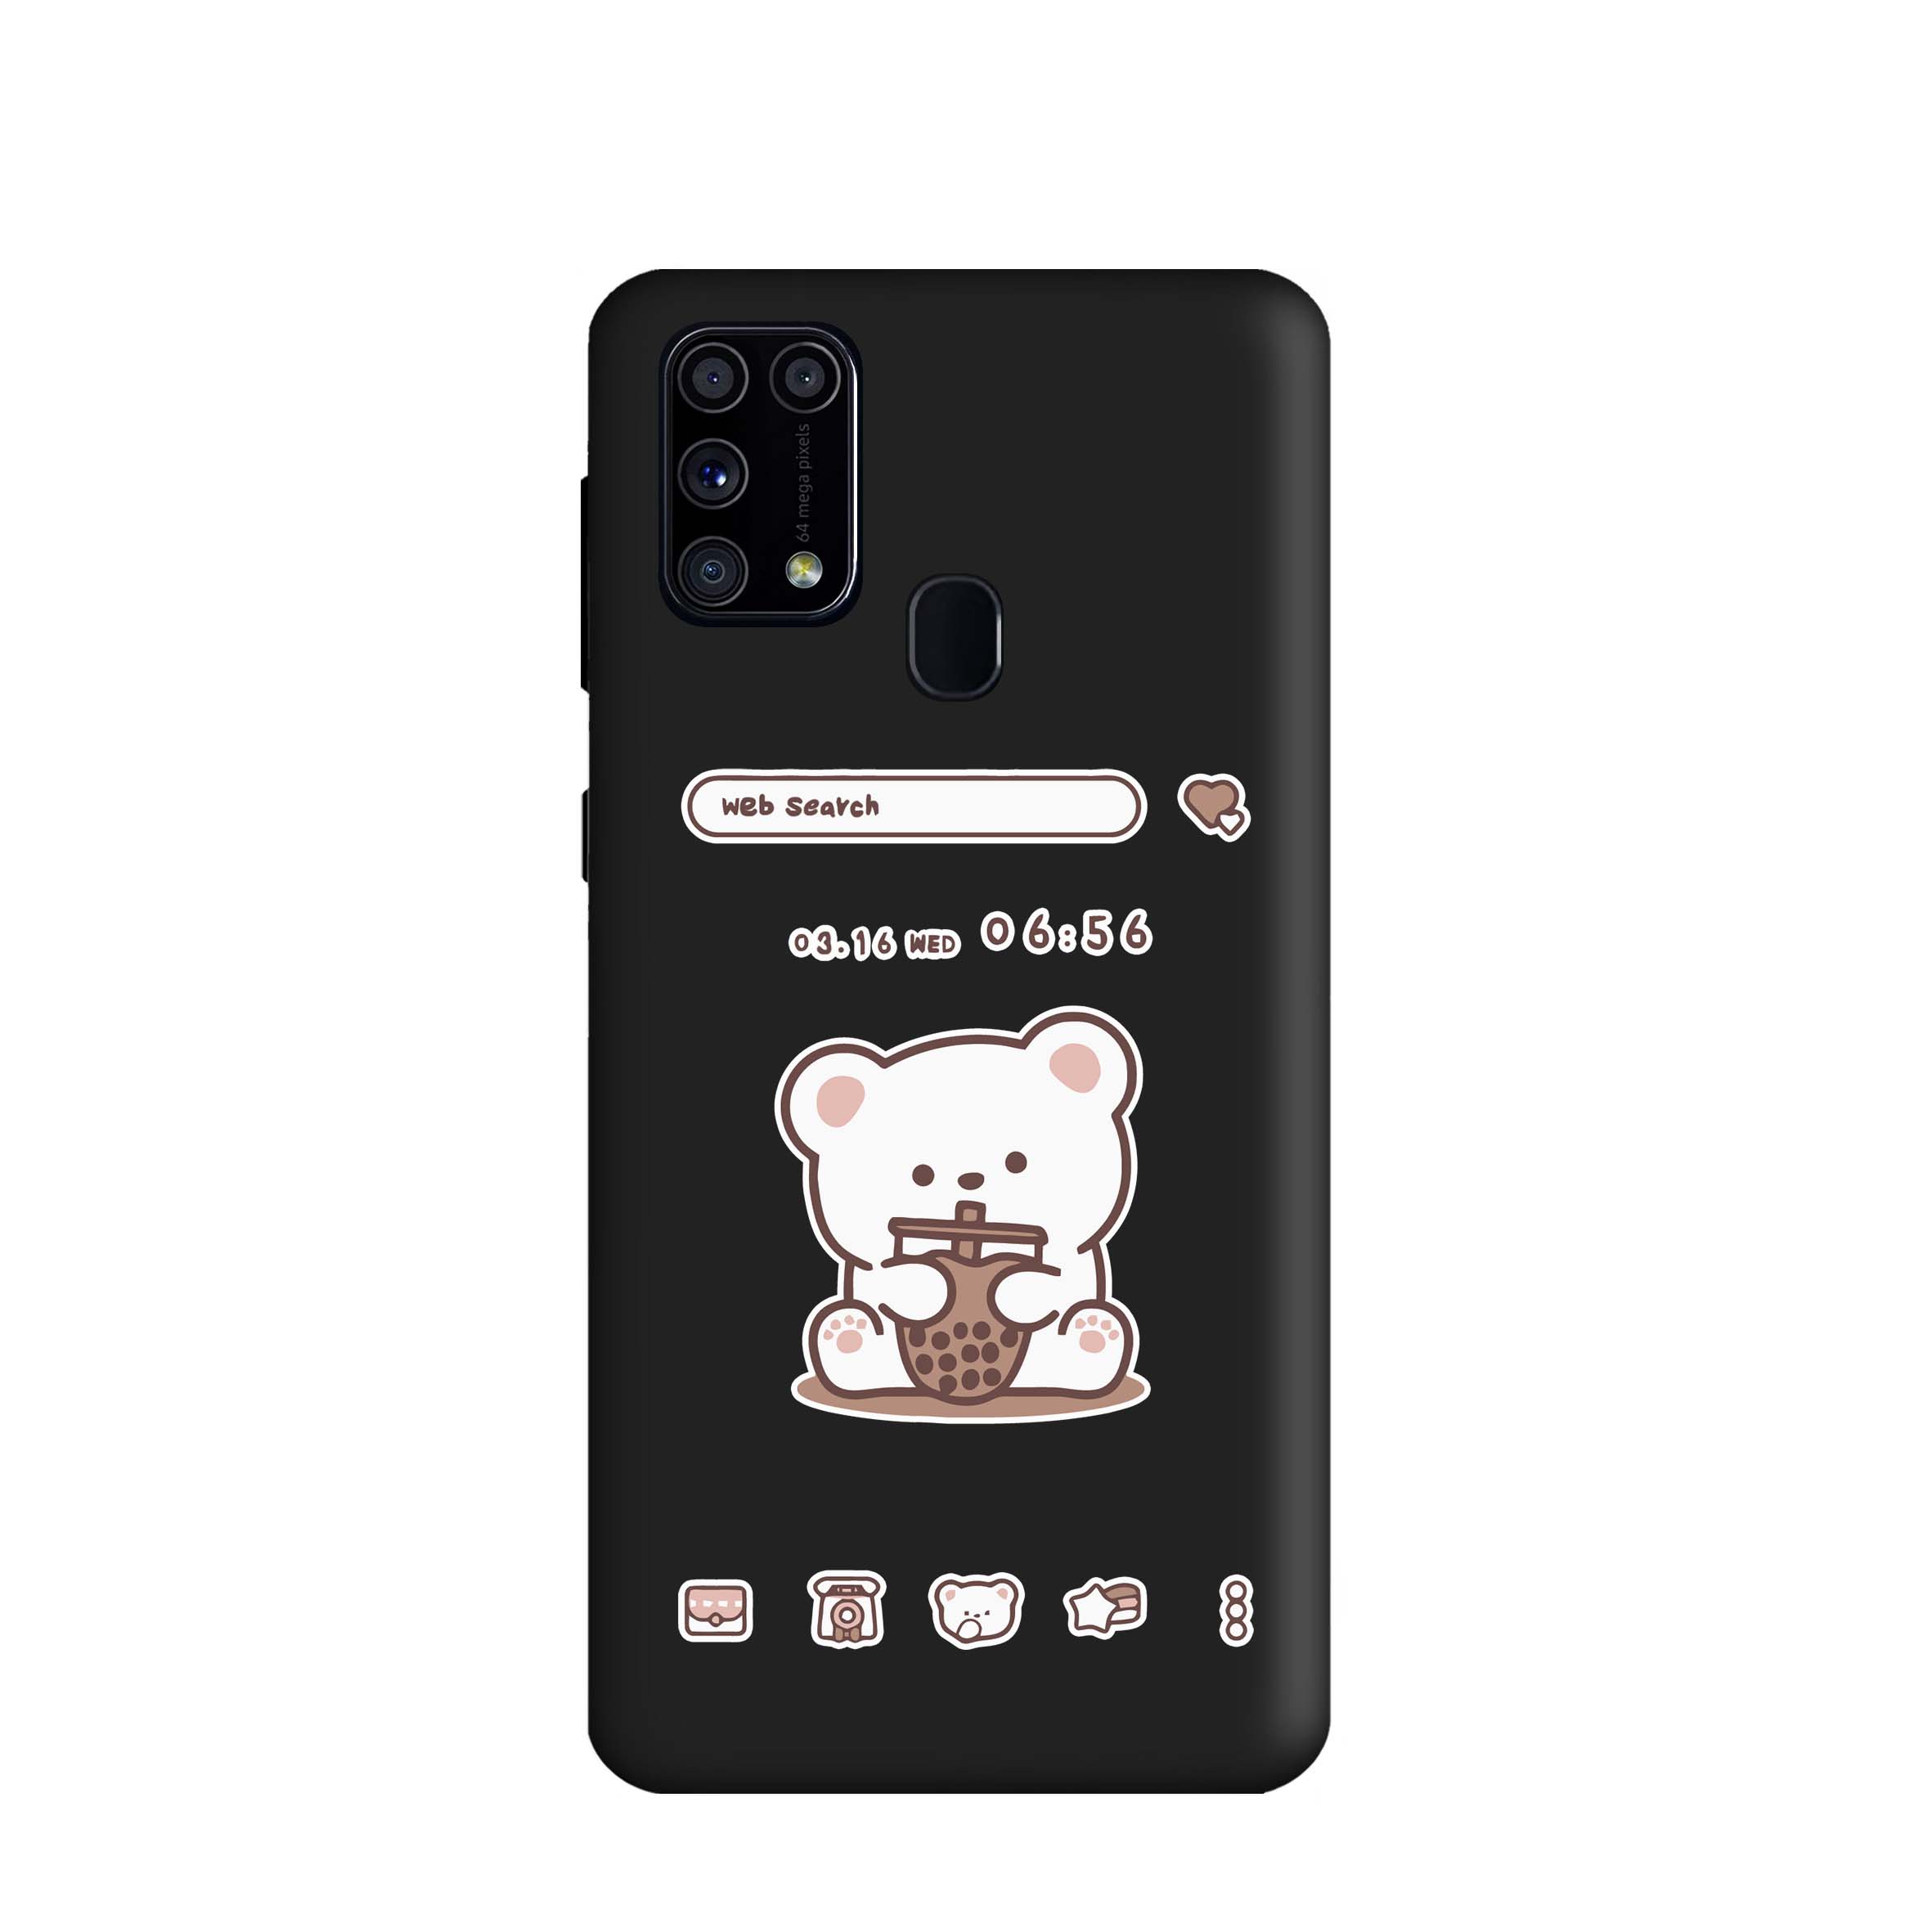 کاور طرح خرس اسموتی کد m2326 مناسب برای گوشی موبایل سامسونگ Galaxy F41 